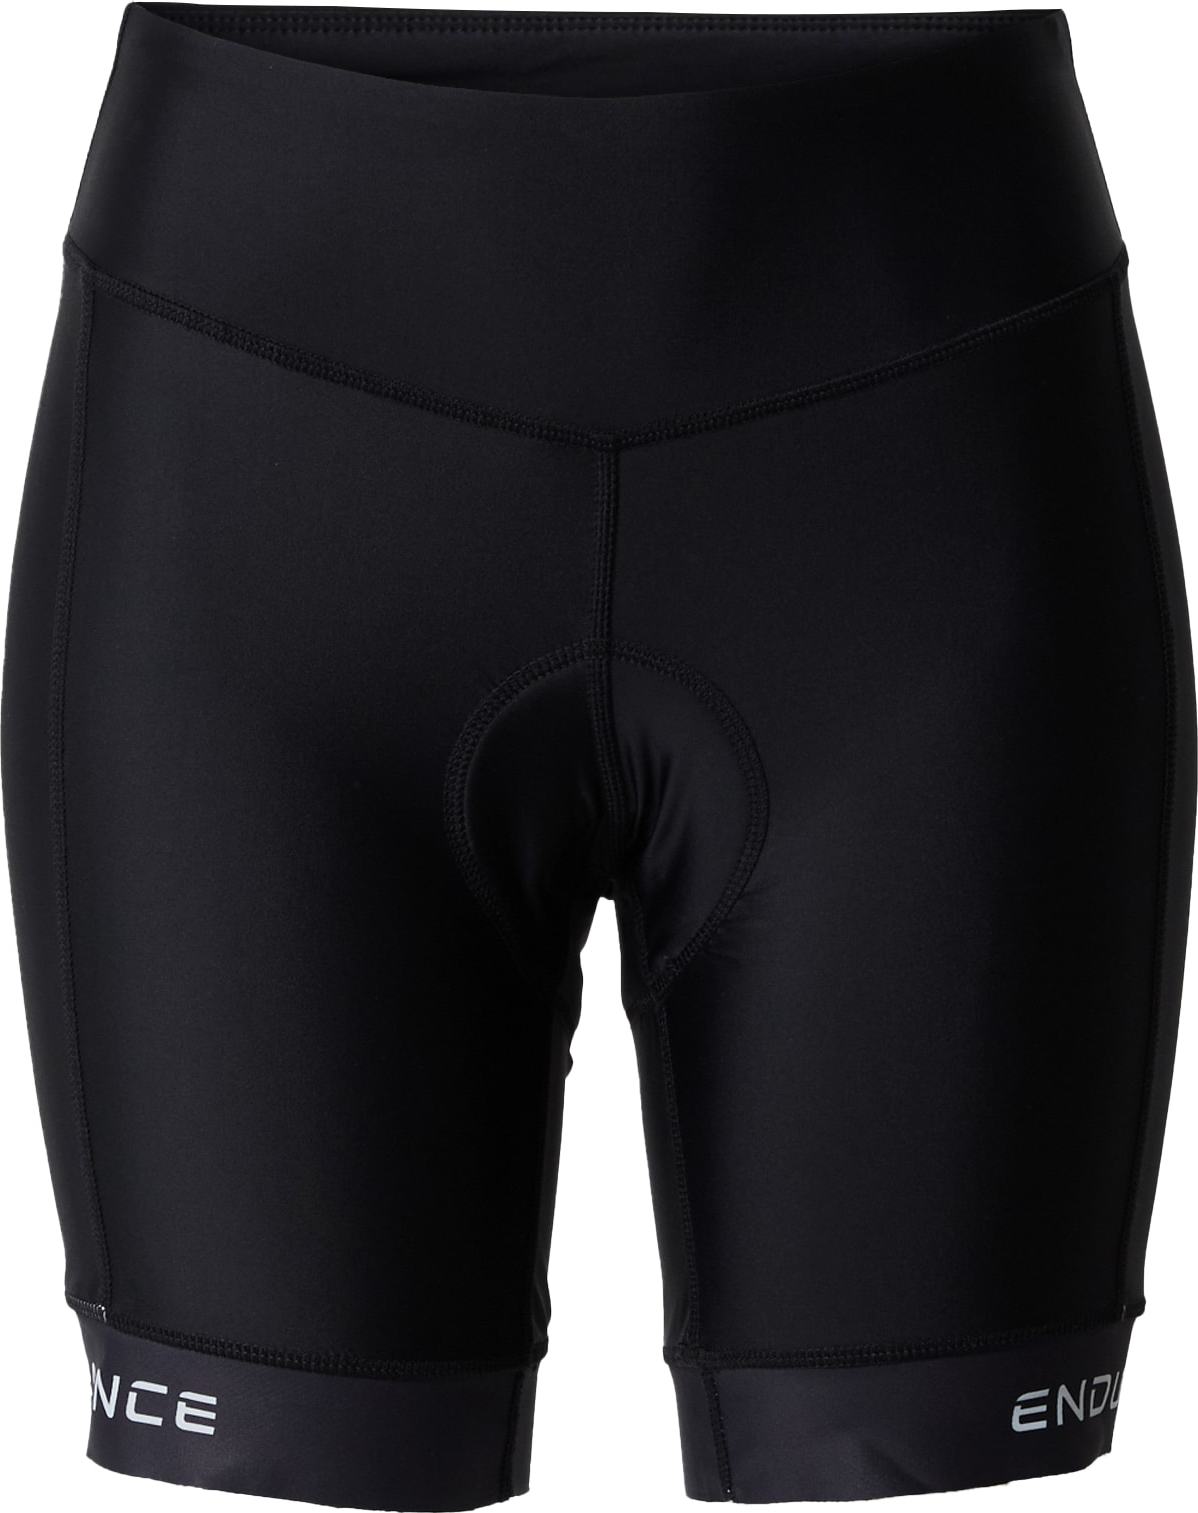 ENDURANCE Sportovní kalhoty 'Propolis' černá / bílá